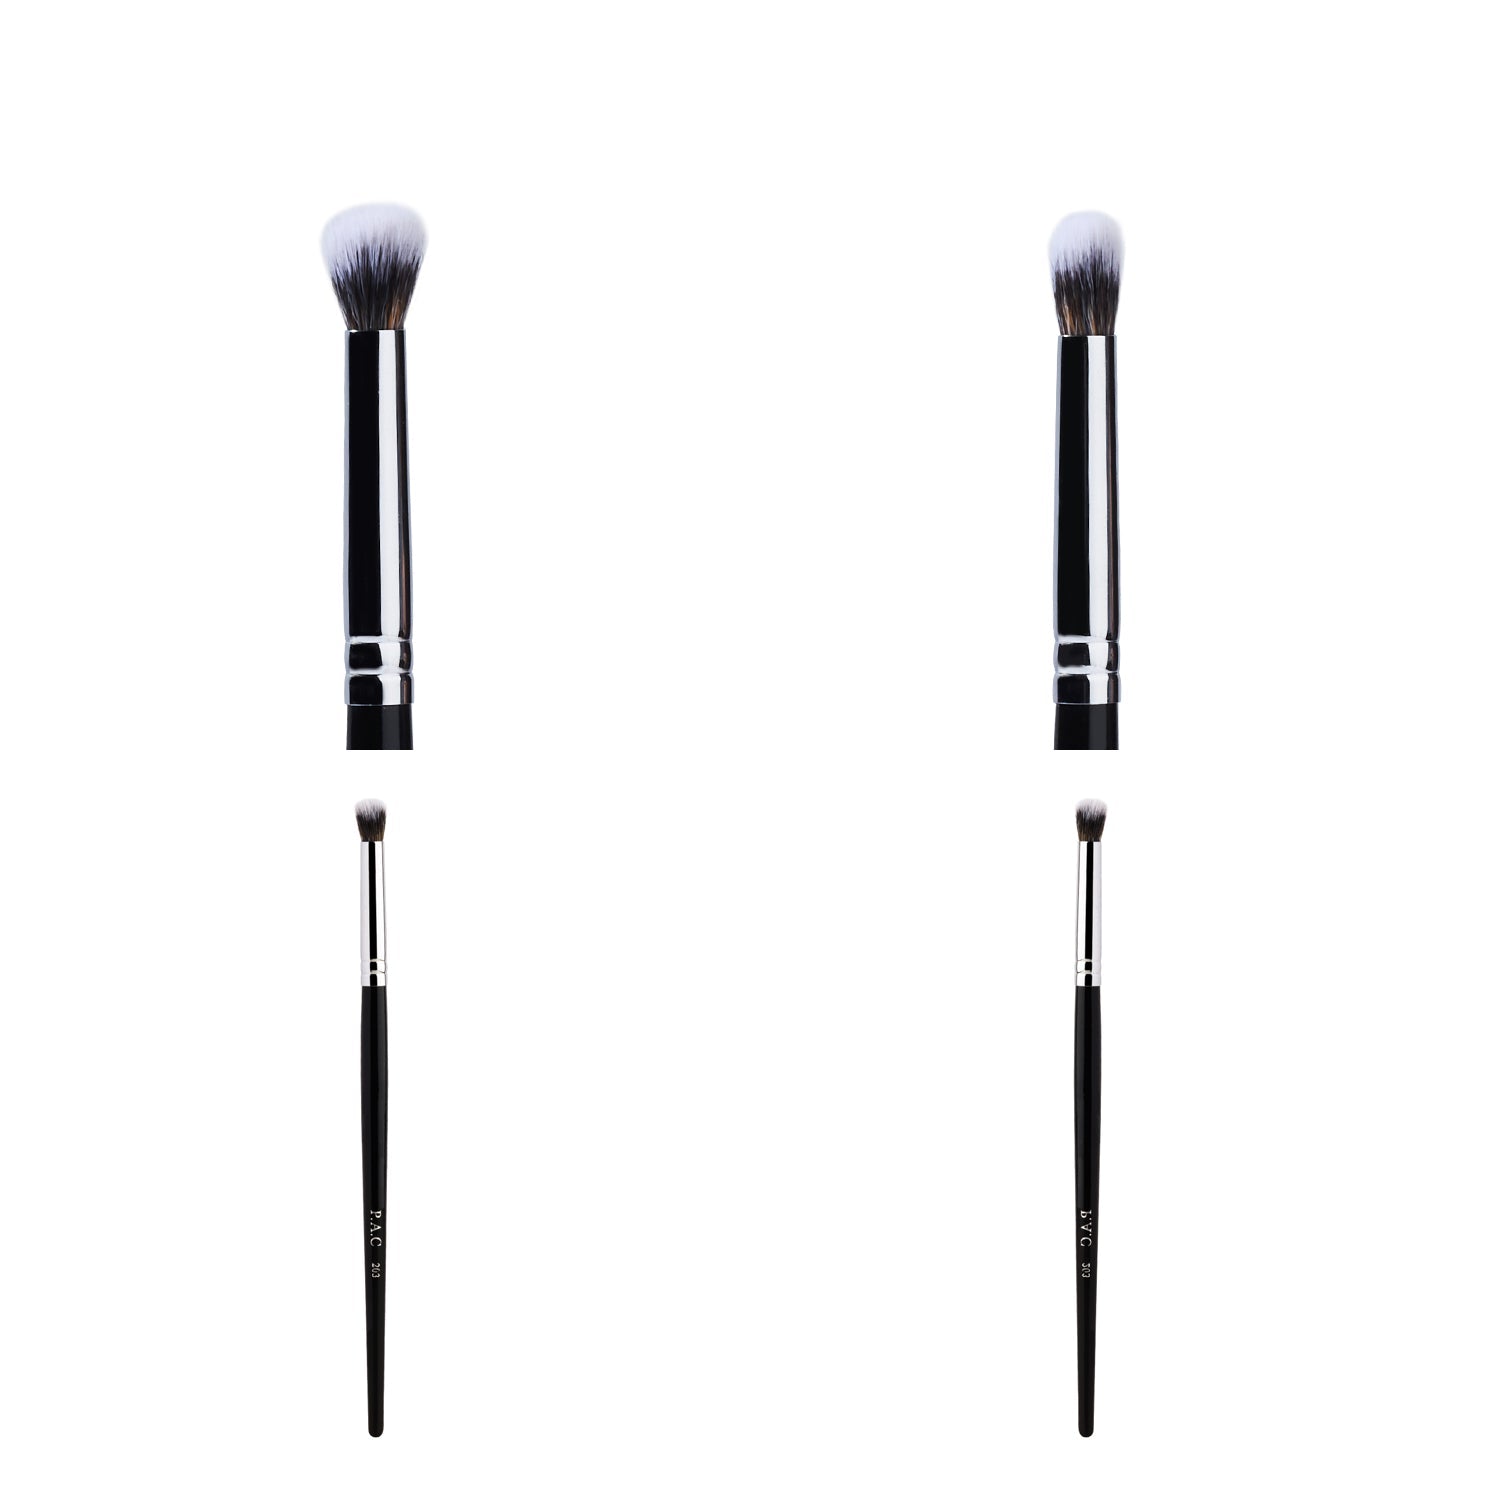 PAC Cosmetics Eyeshadow Blending Brush 203